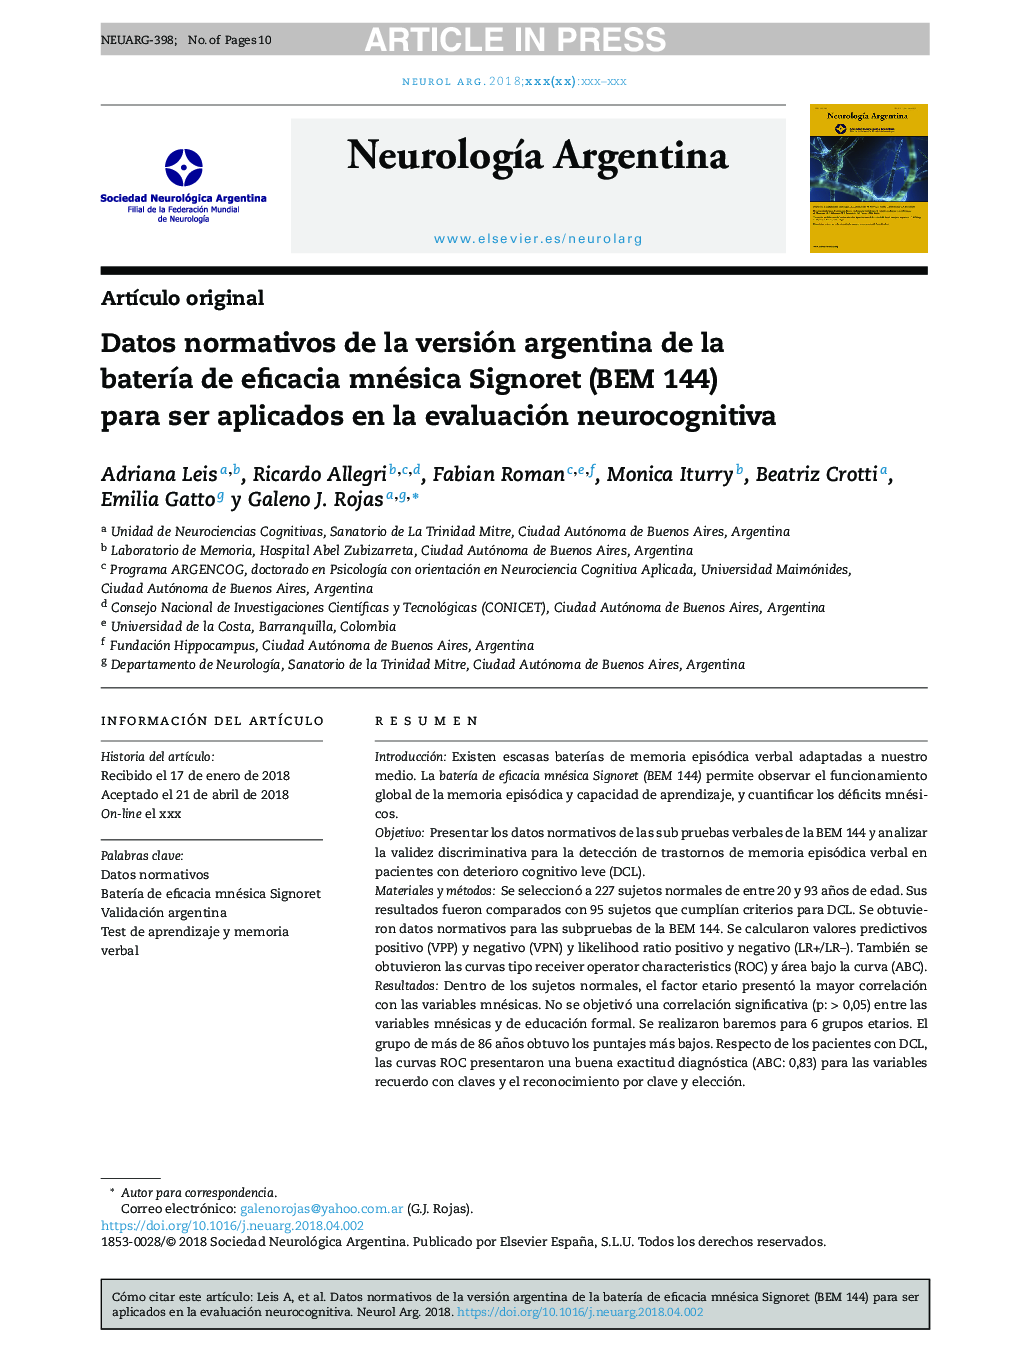 Datos normativos de la versión argentina de la baterÃ­a de eficacia mnésica Signoret (BEM 144) para ser aplicados en la evaluación neurocognitiva